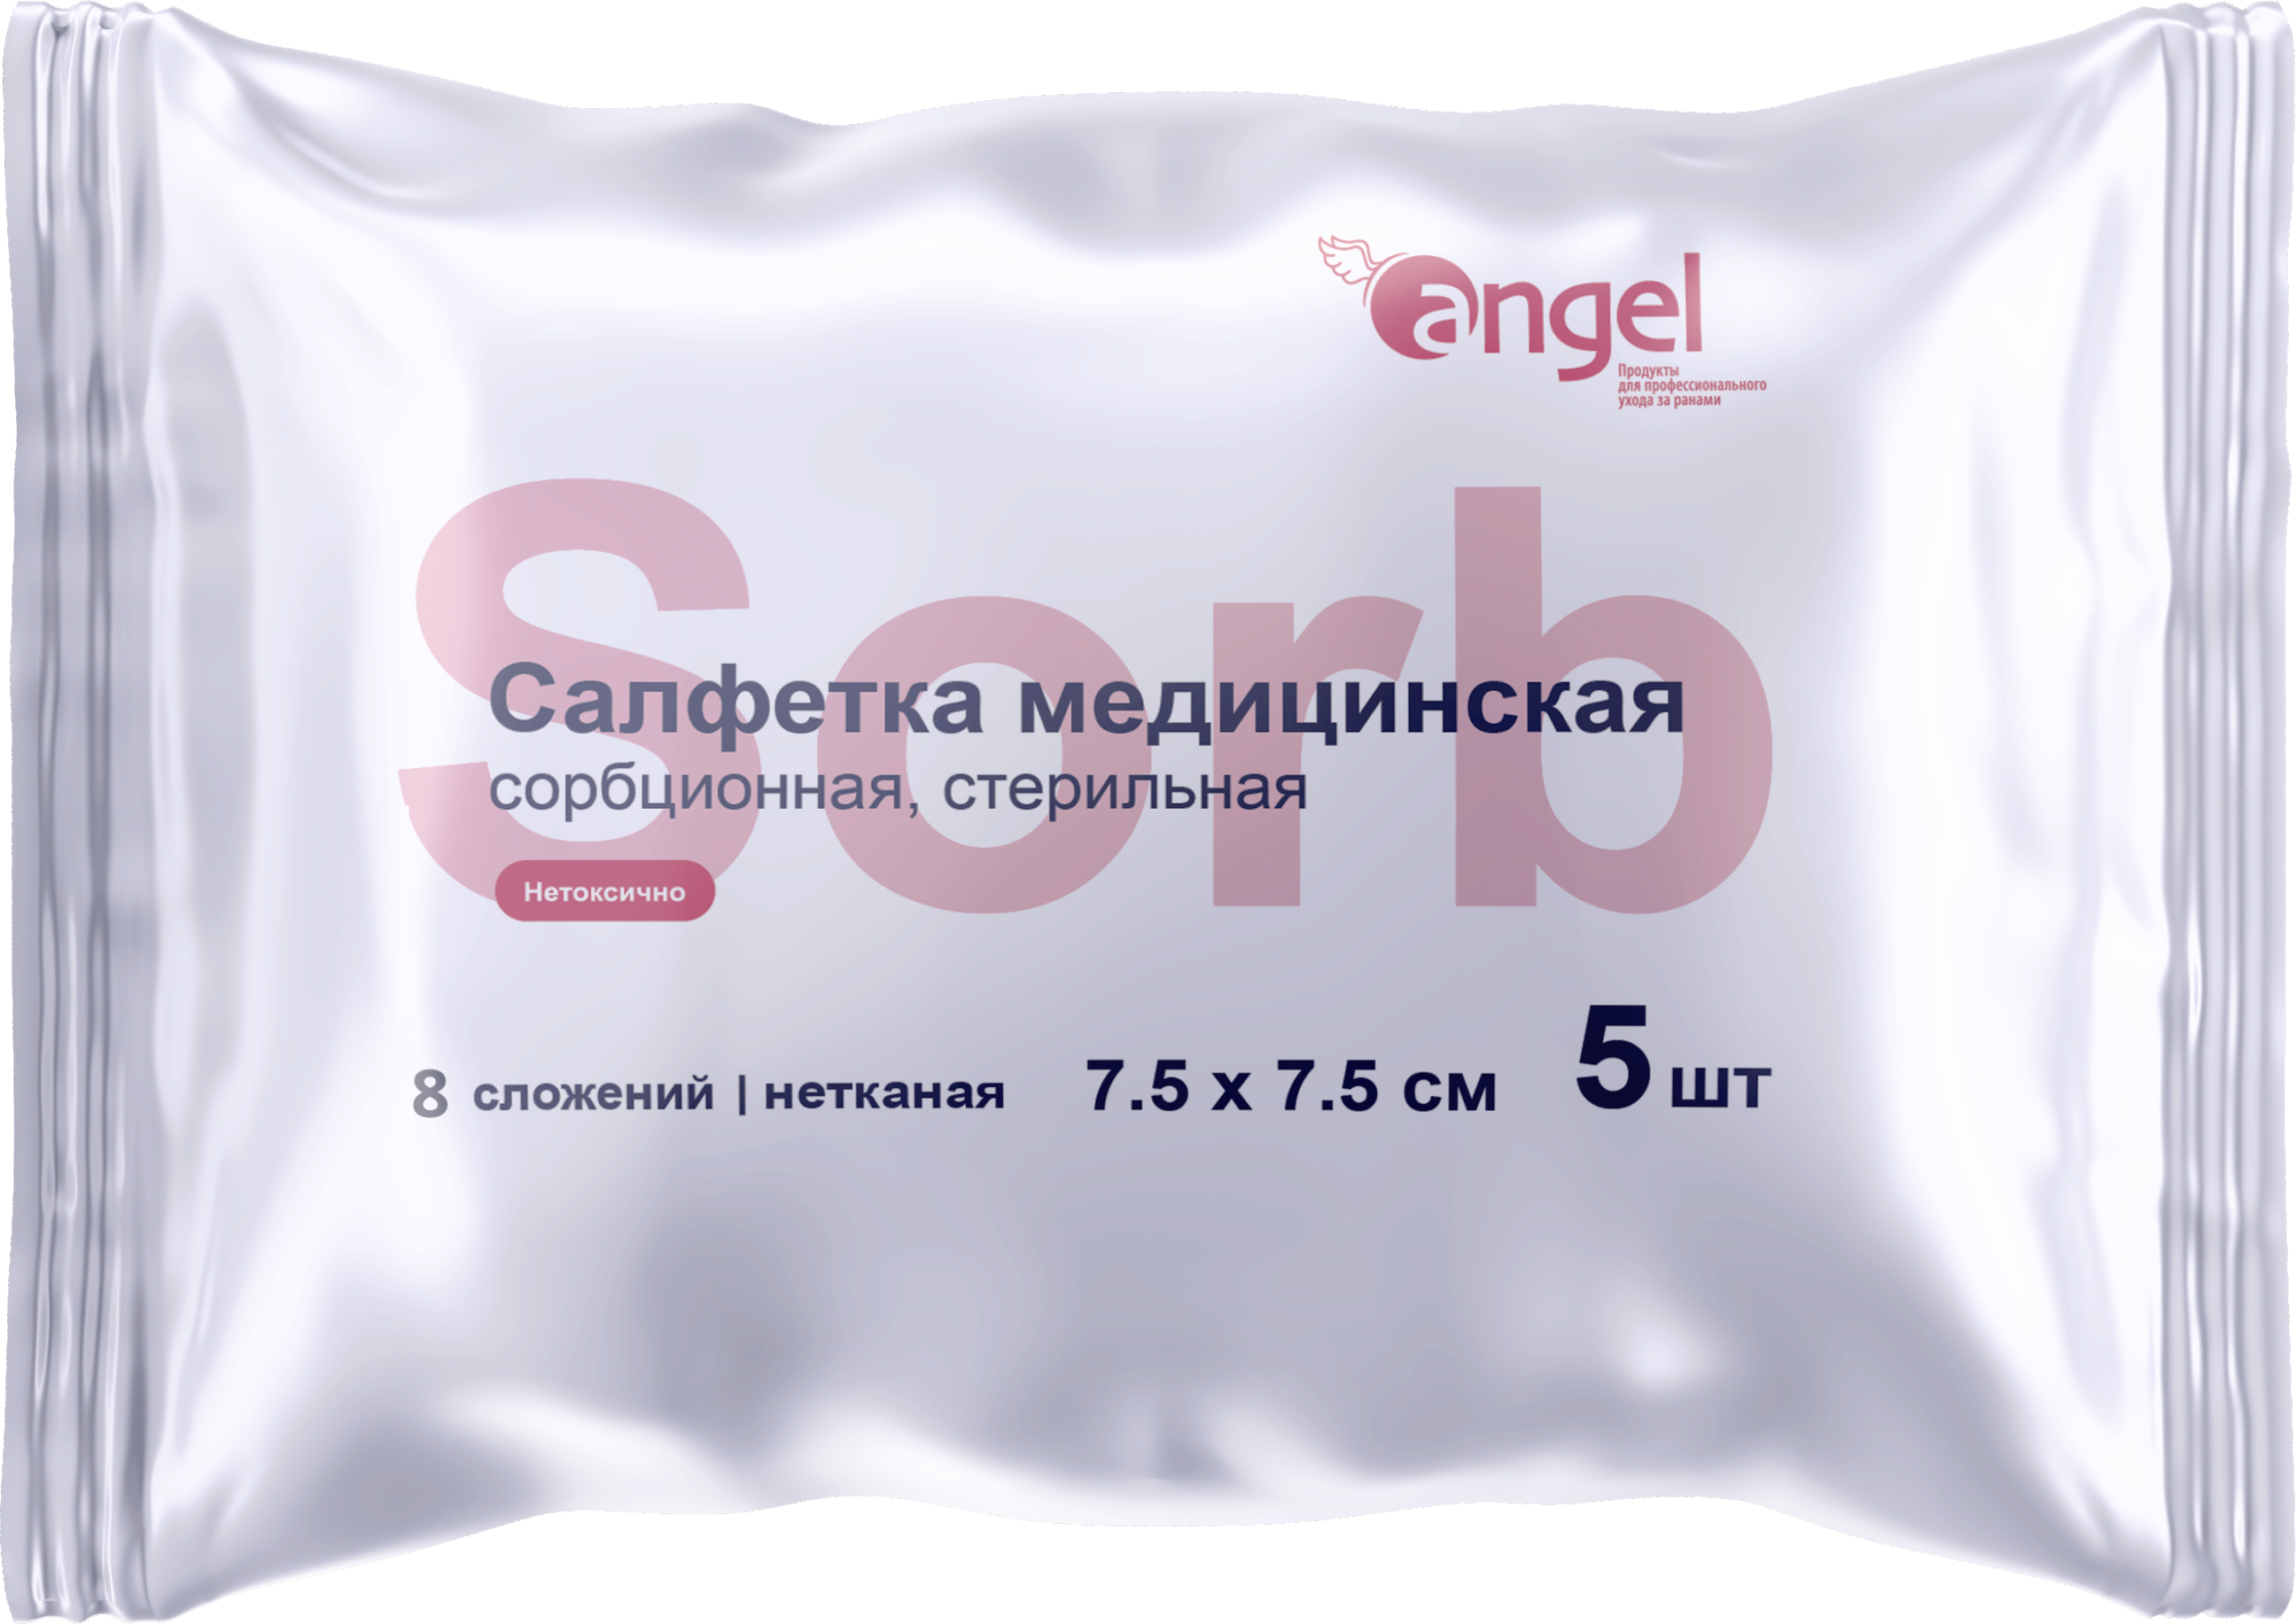 Angel / Ангел - салфетки сорбционные, нетканые, стерильные, 8 сл., 7,5x7,5 см, 5 шт. (5 шт.)